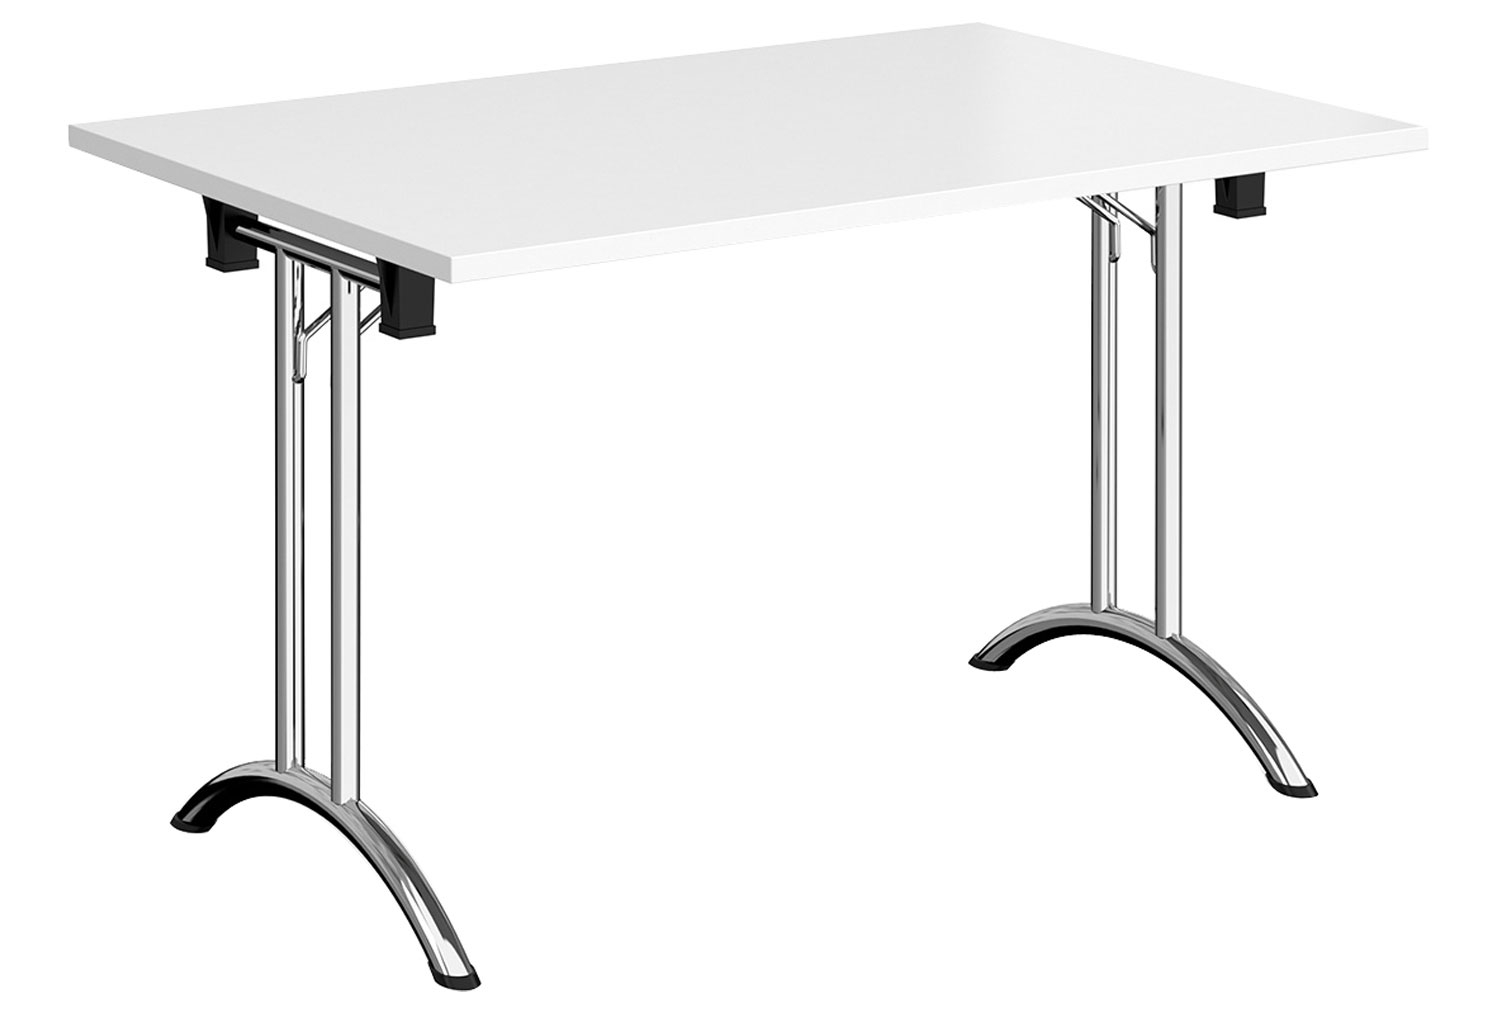 Zeeland Rectangular Folding Table, 120wx80dx73h (cm), Chrome Frame, White